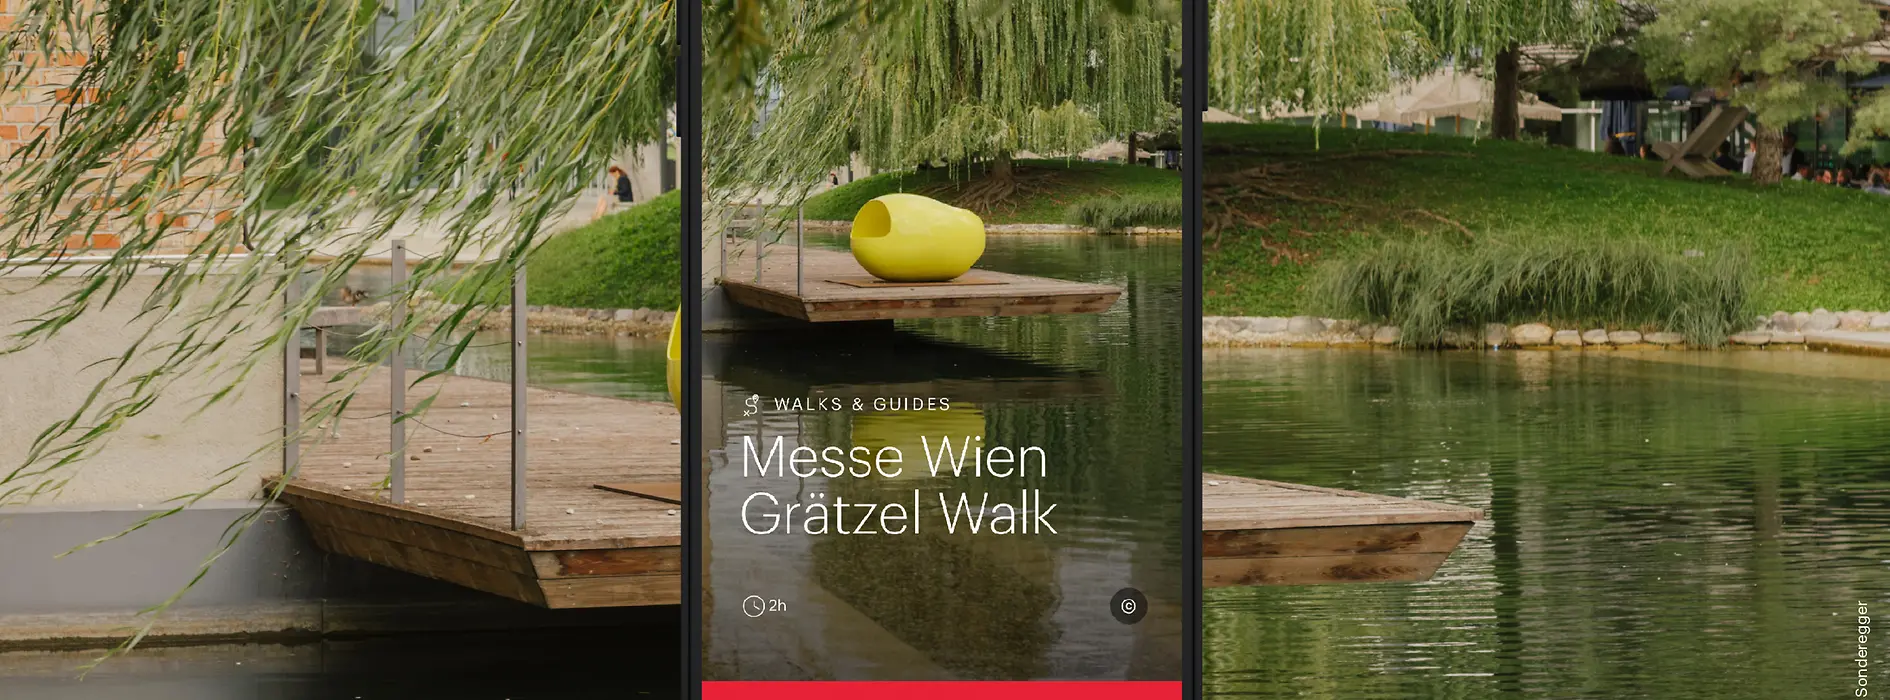 Werbesujet ivie Messe Wien Grätzel Walk - Wasserfläche mit Bäumen und Kunstobjekt